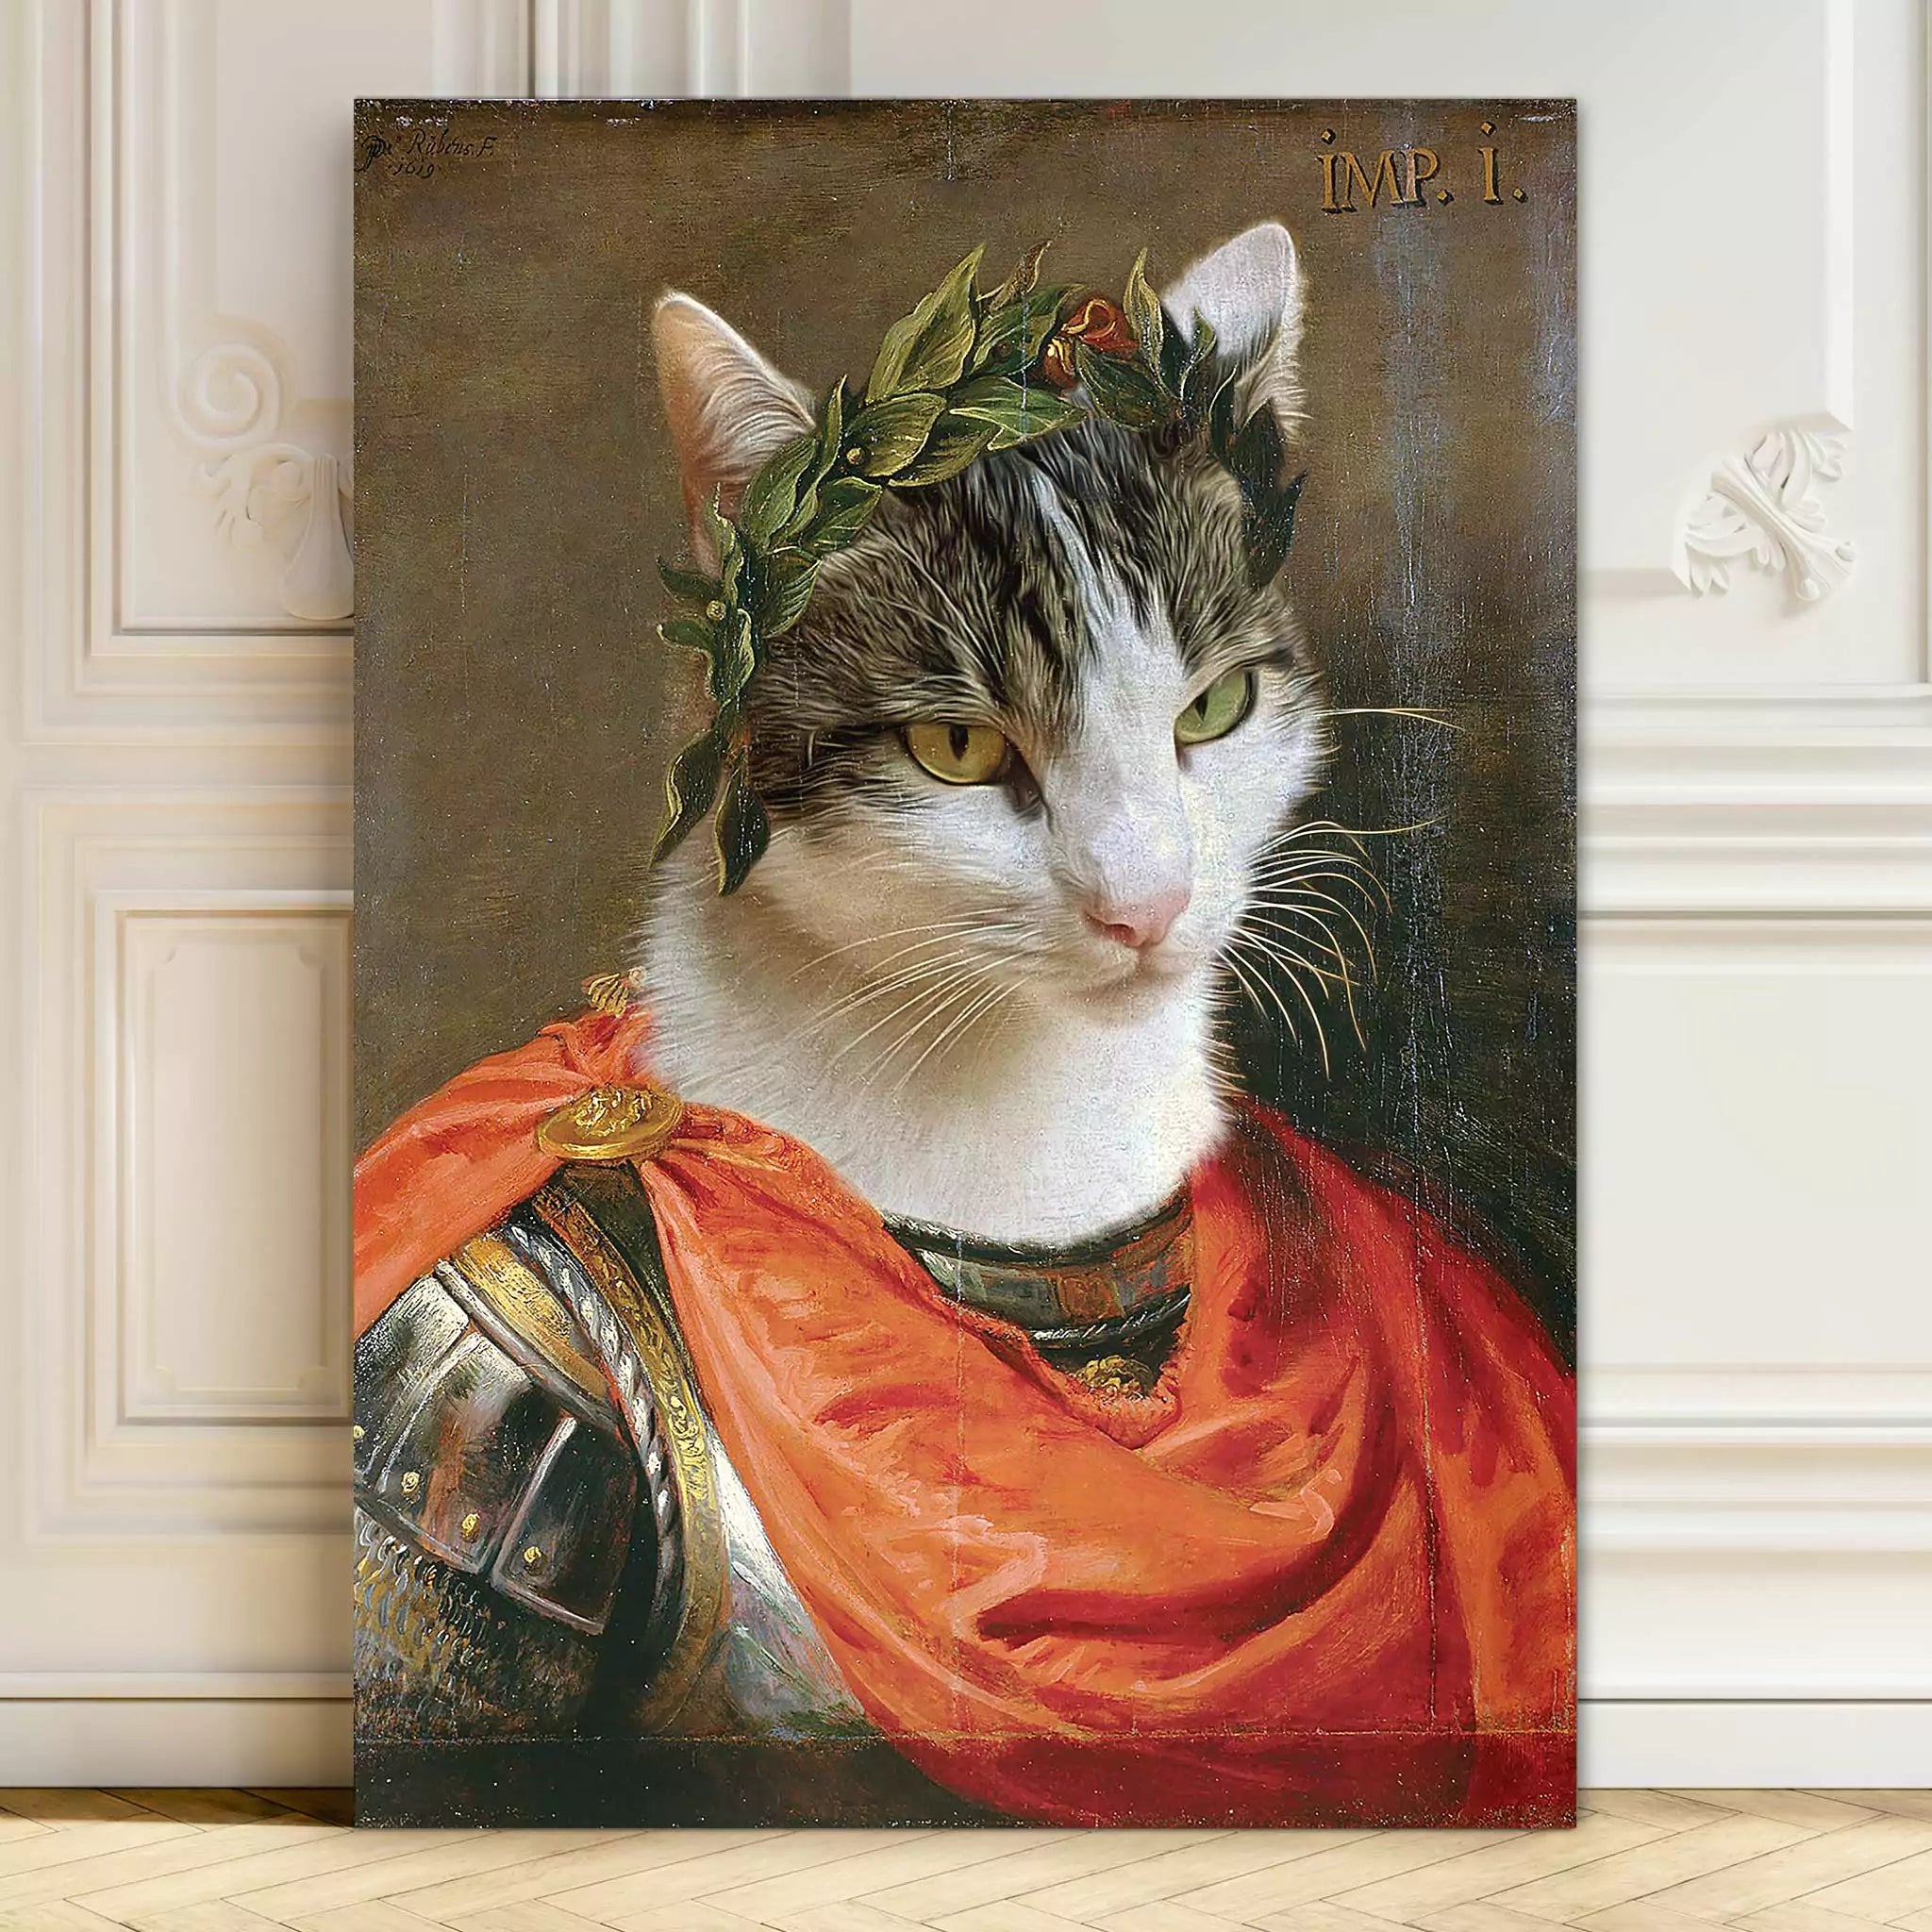 cat or dog in julius caesar outfit, Roman emperor pet portrait